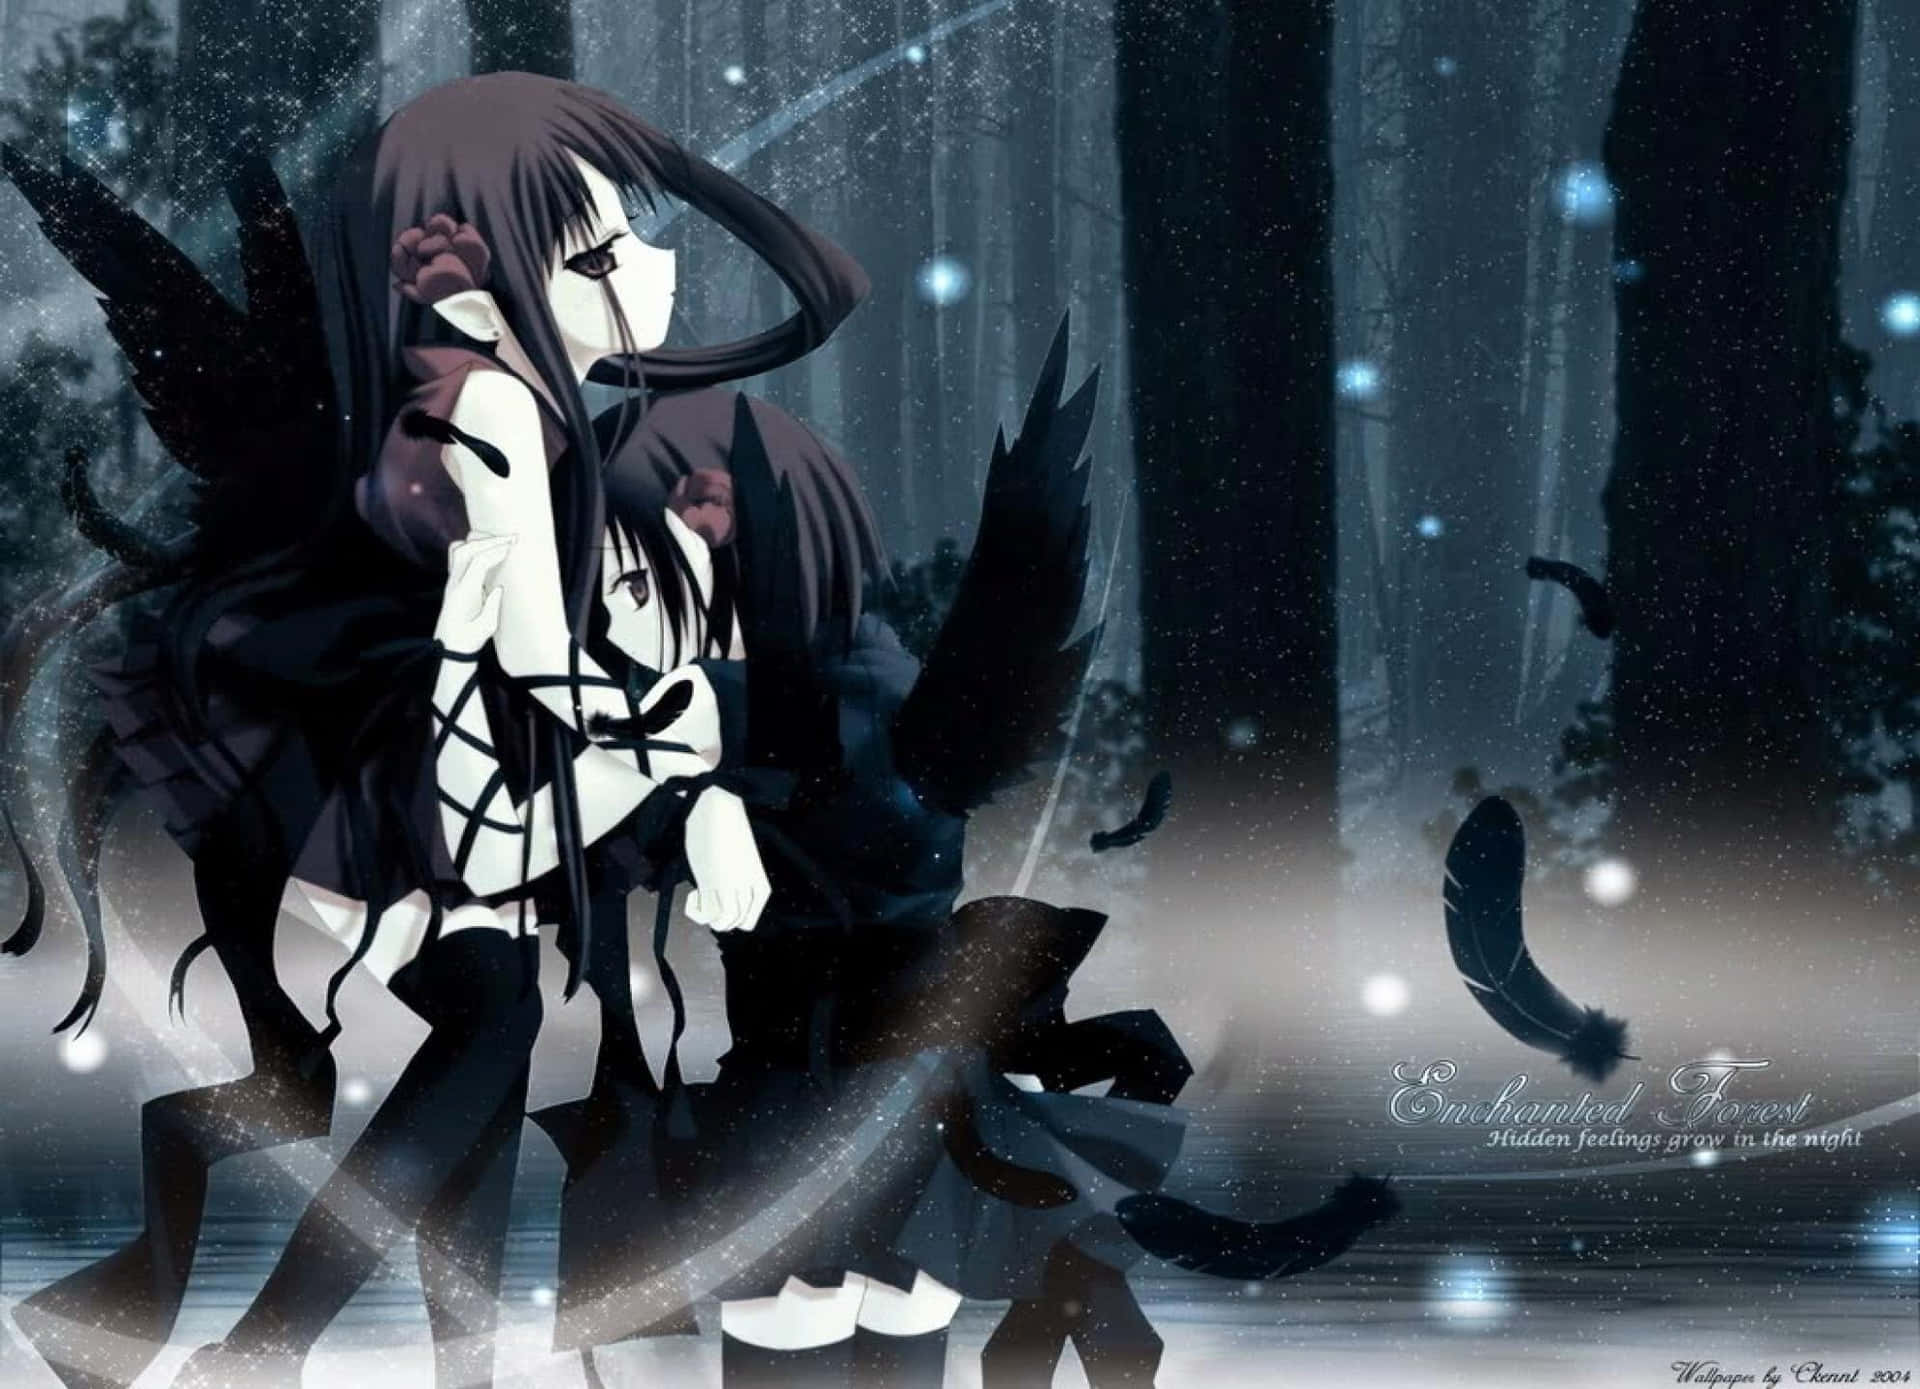 Moonlit Anime Girl Illustration - dark aesthetic anime pfp girl